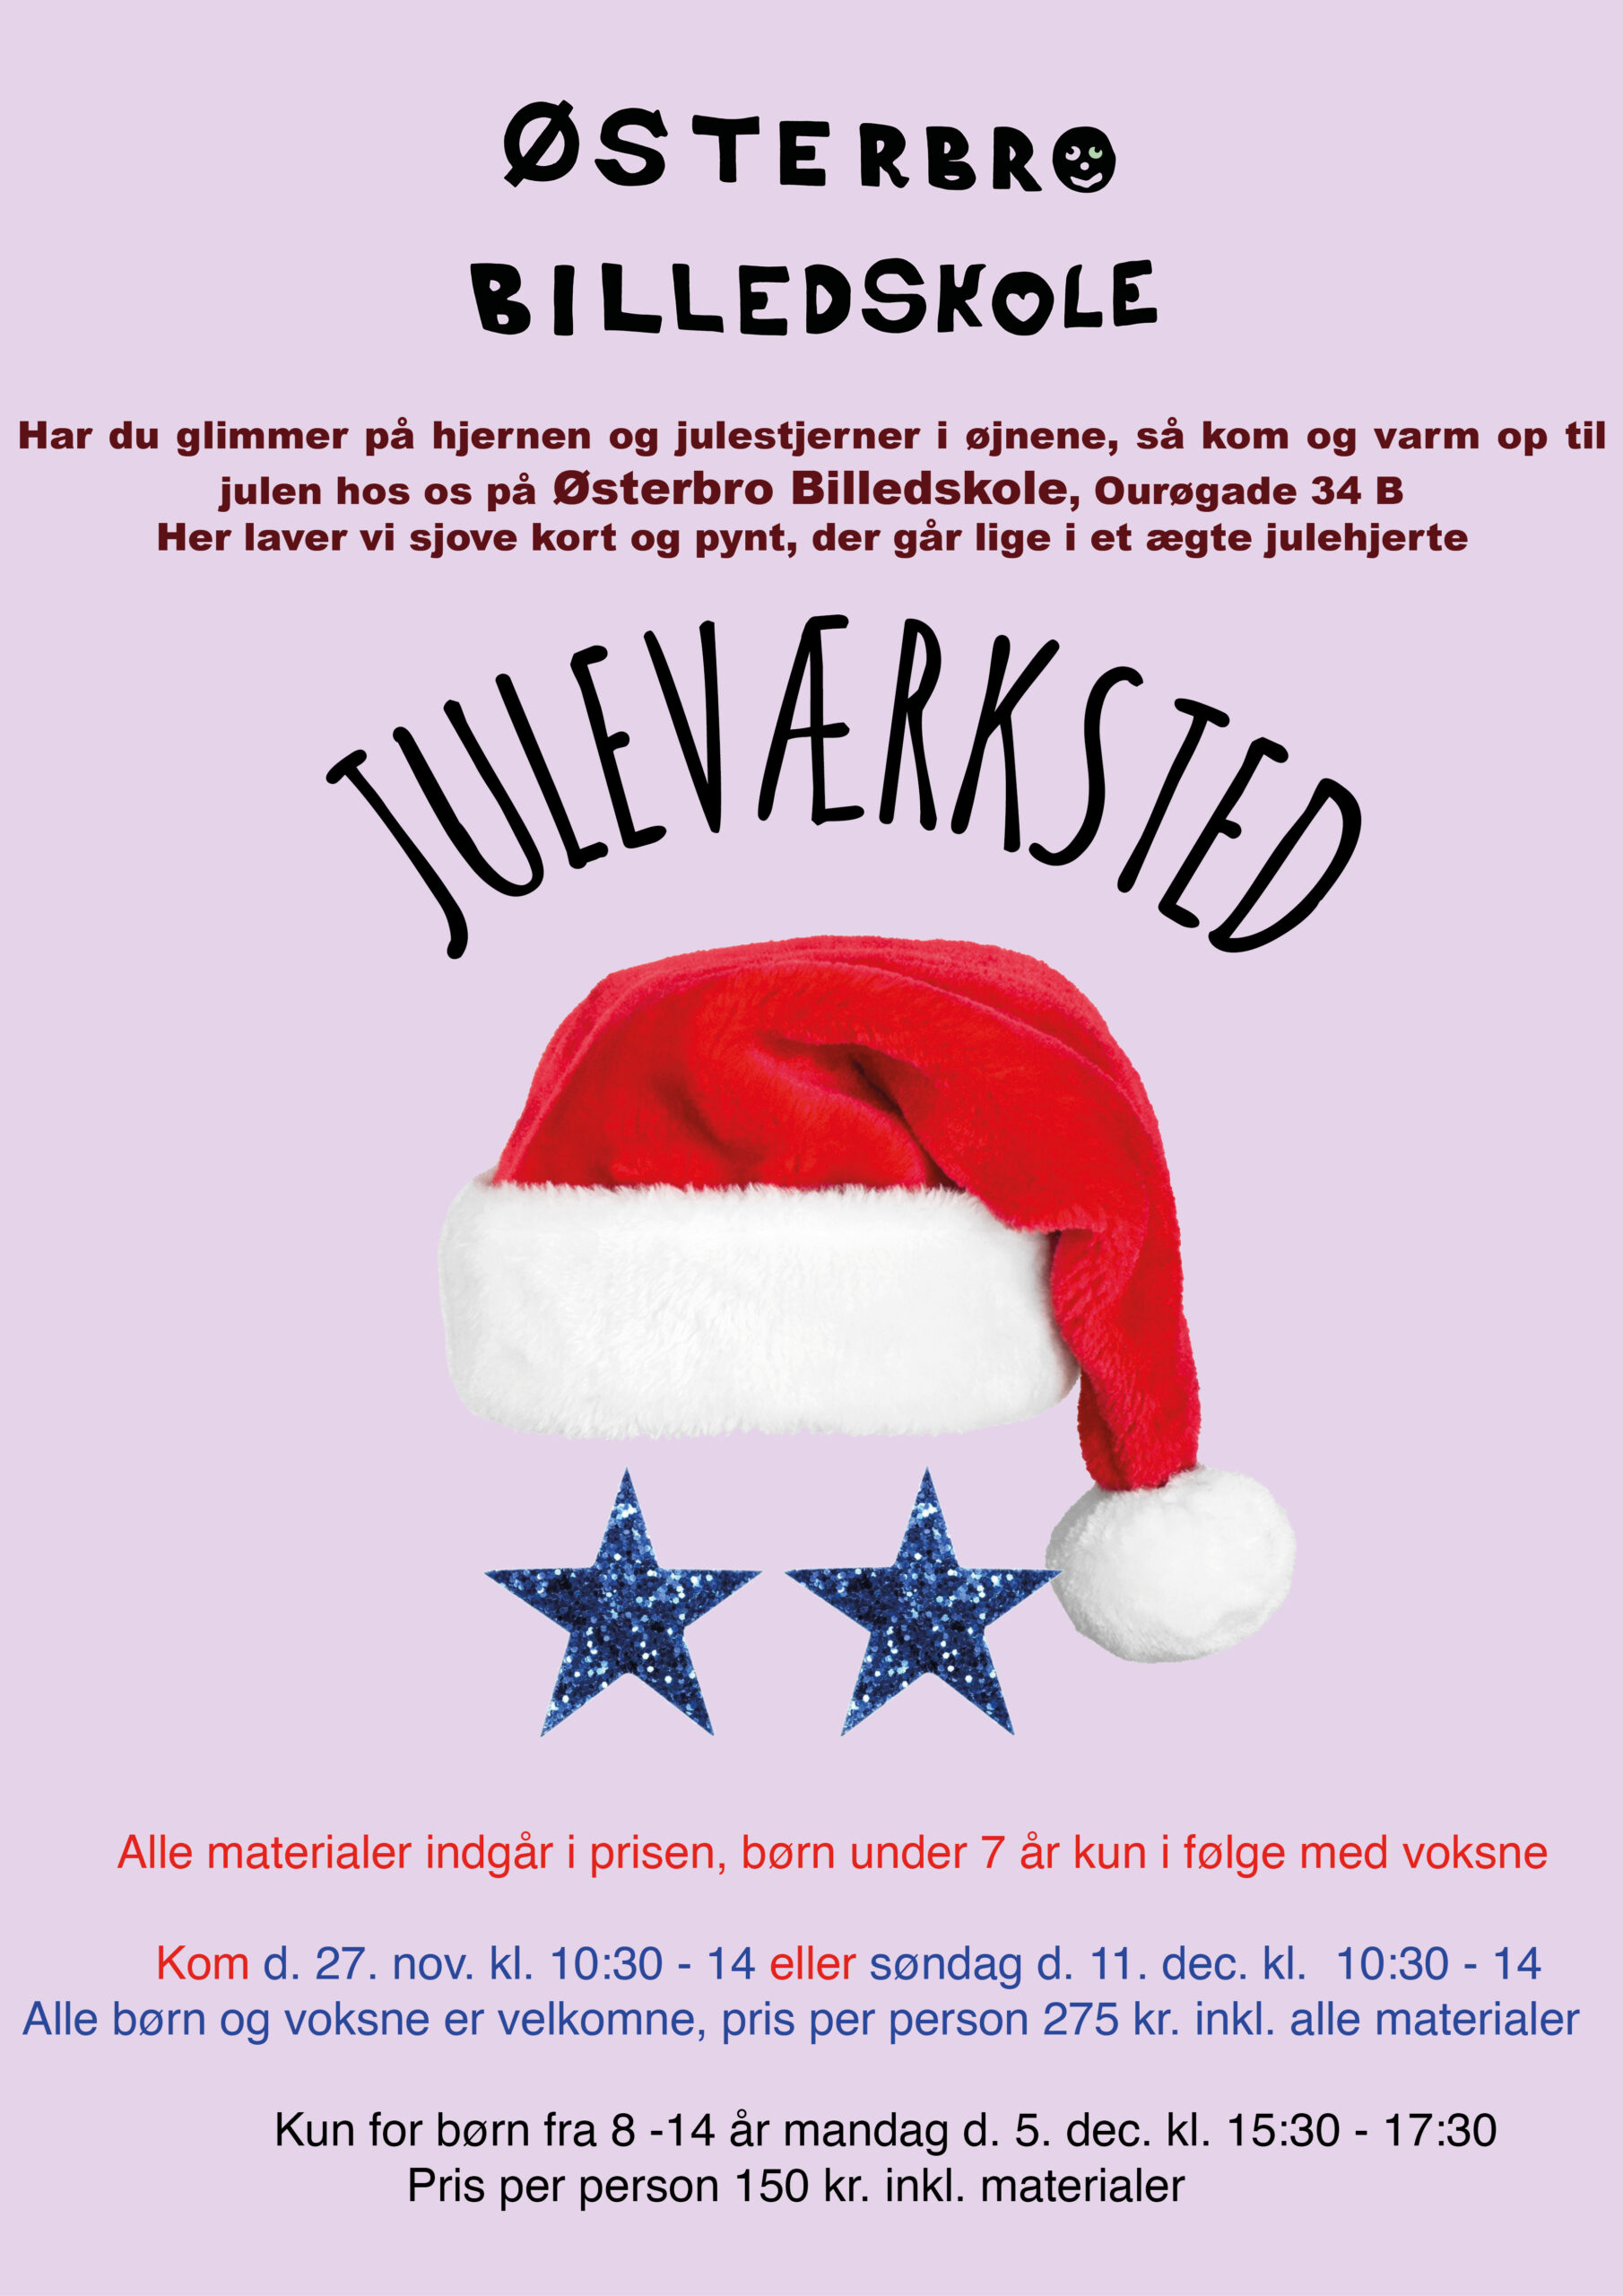 Reservere mærkelig Jeg mistede min vej jule plakat - Østerbro Billedskole